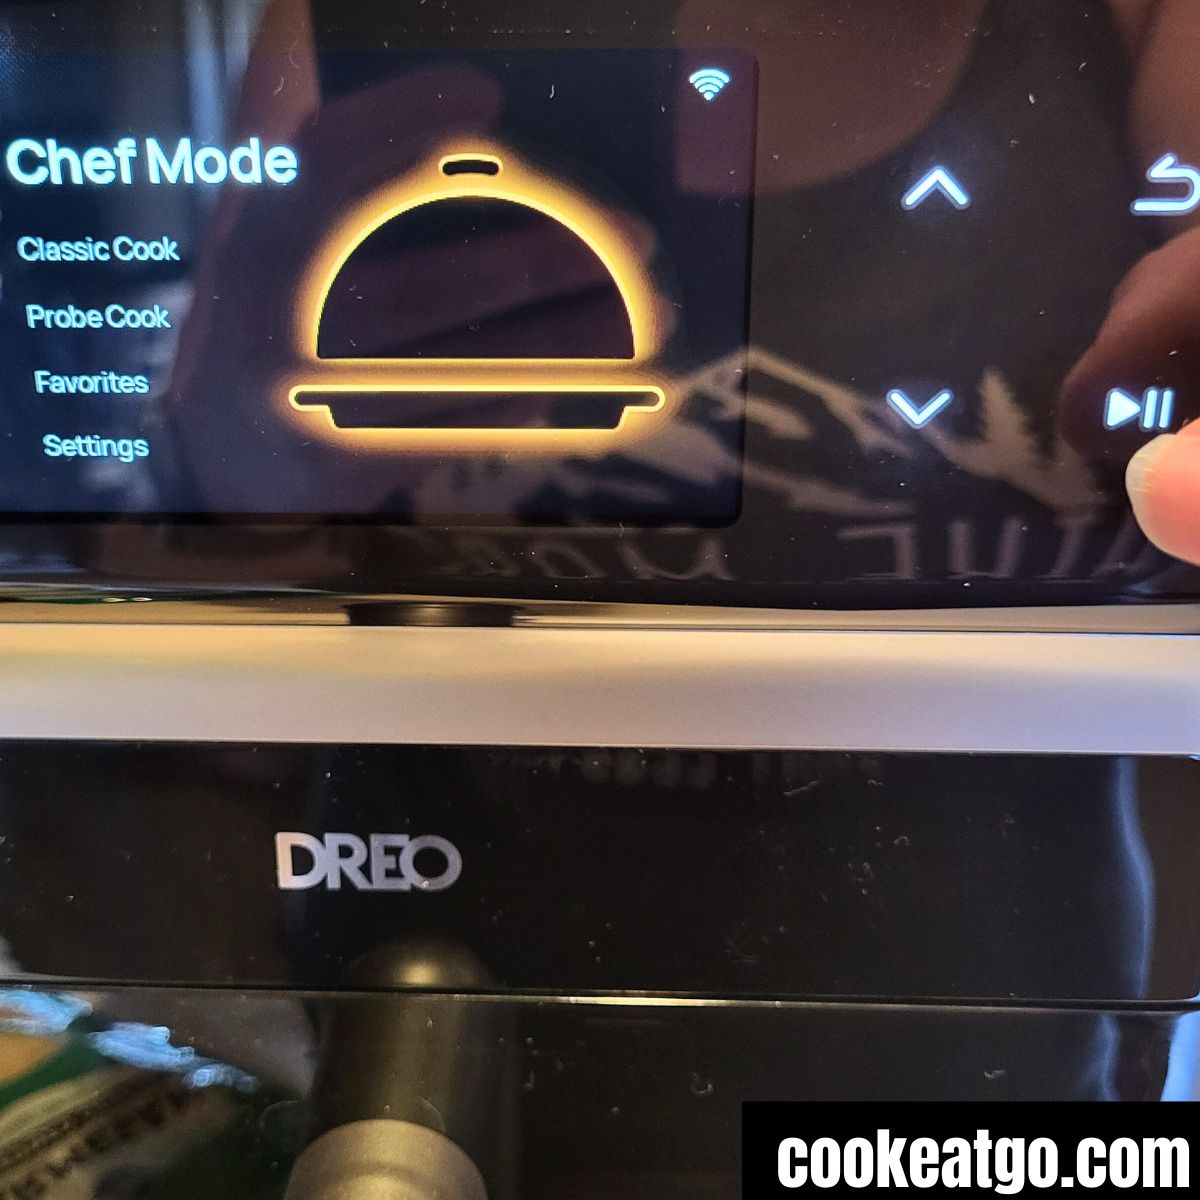 Dreo Chefmaker Combi Fryer - Cook Eat Go